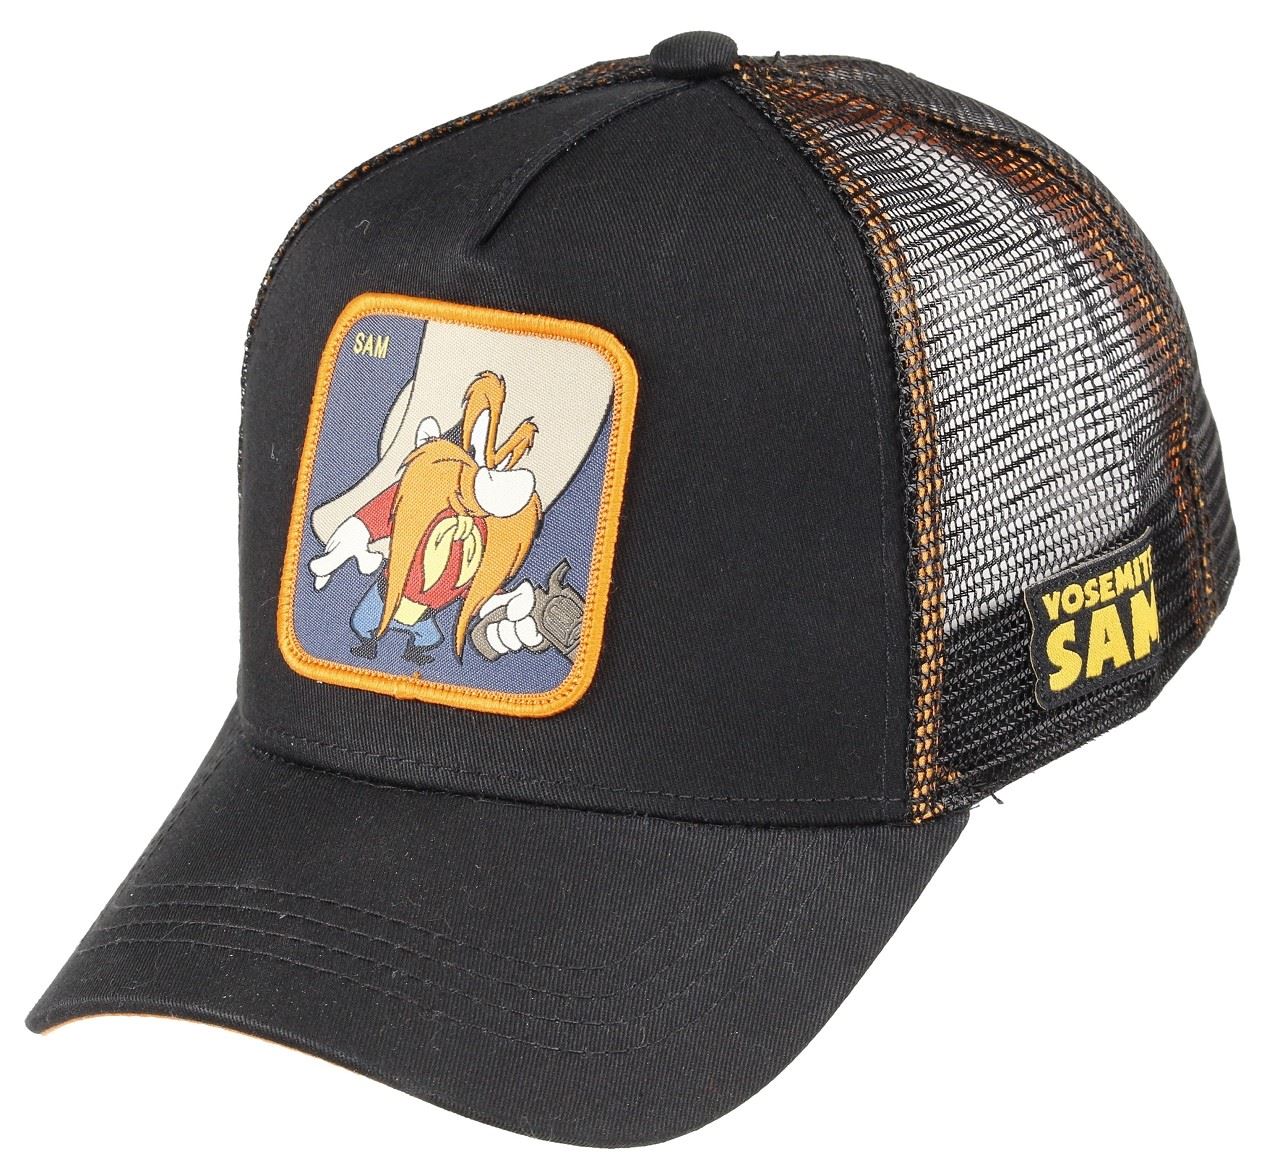 Yosemite Sam Looney Tunes Black Trucker Cap Capslab